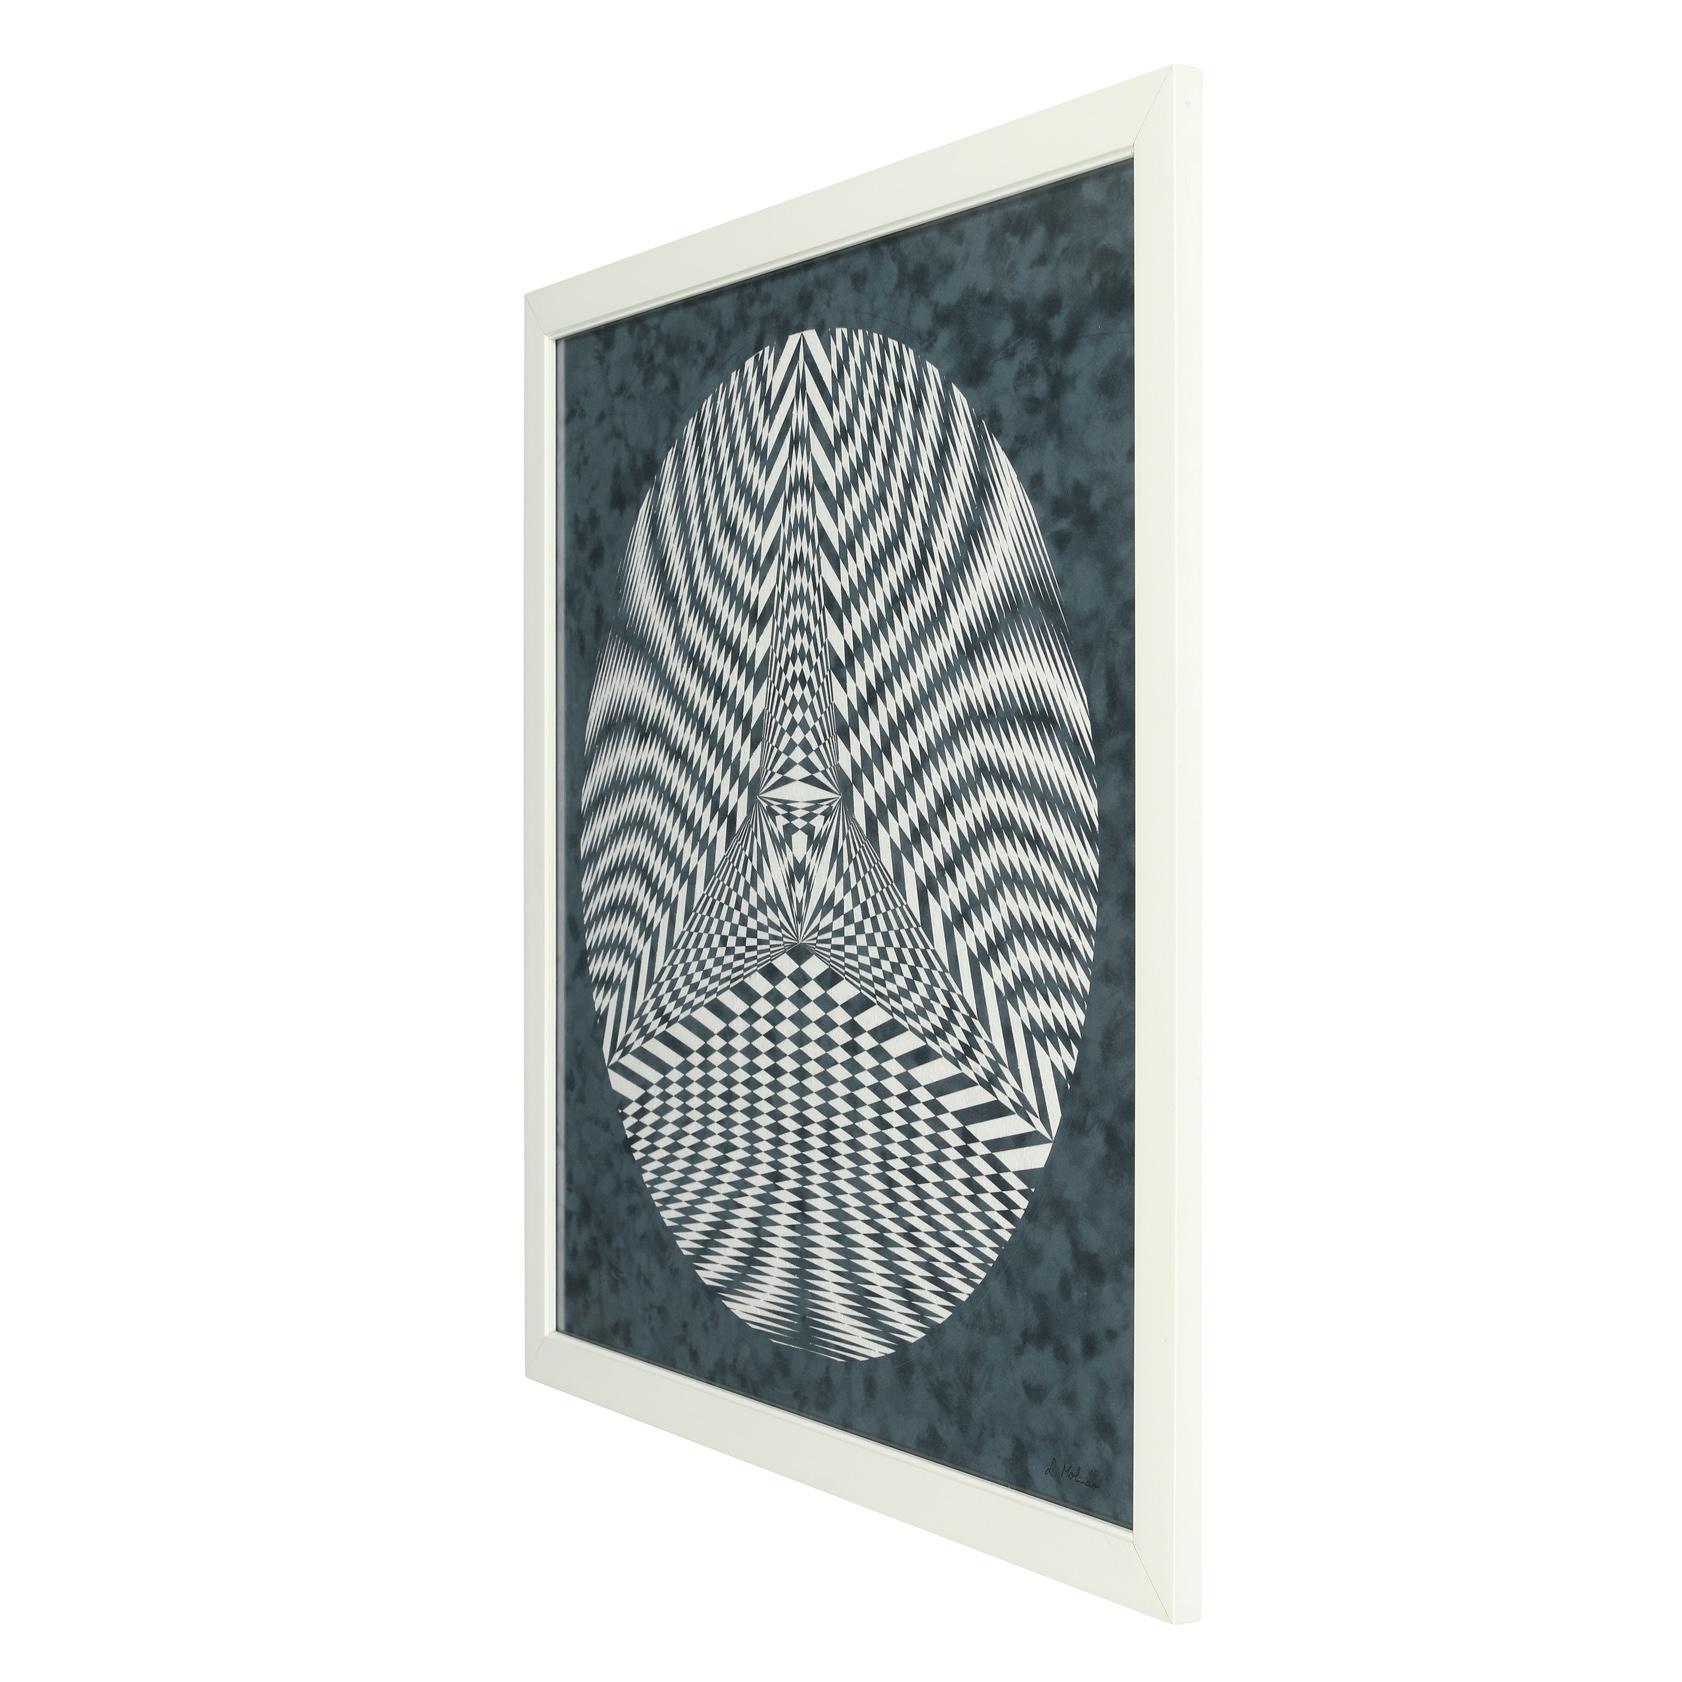 Ein einzigartiges Werk des ungarischen Künstlers Laszlo Molnar, das aus einem Stück Passepartoutkarton zu einer beeindruckenden Collage zusammengesetzt ist.